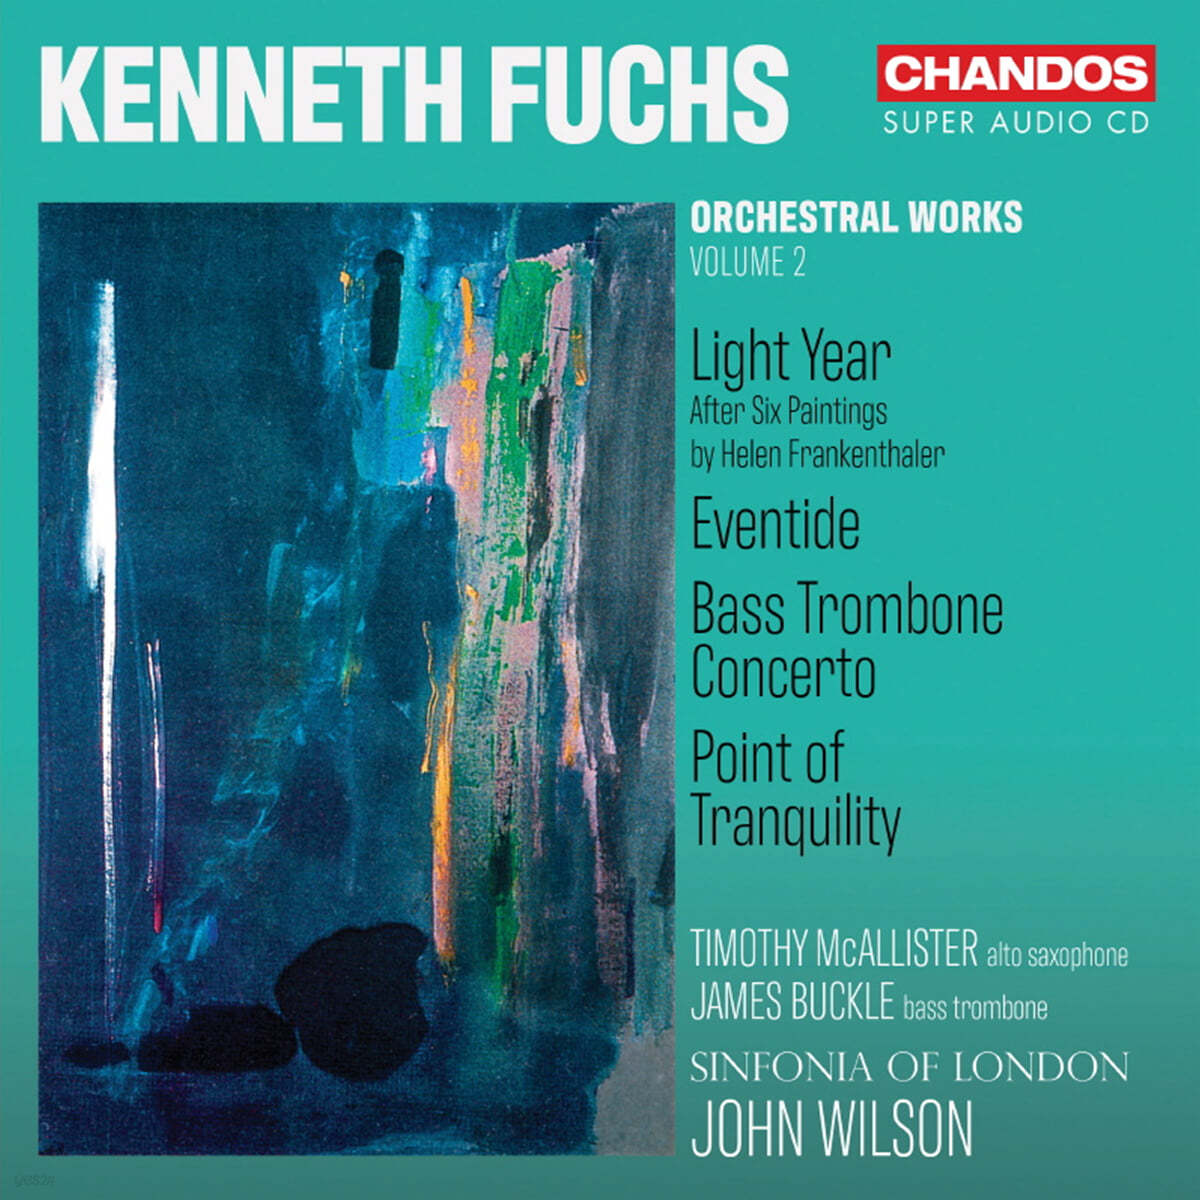 John Wilson 케네스 푹스: 관현악 작품집 Vol. 2 (Kenneth Fuch: Orchestral Works Vol. 2)